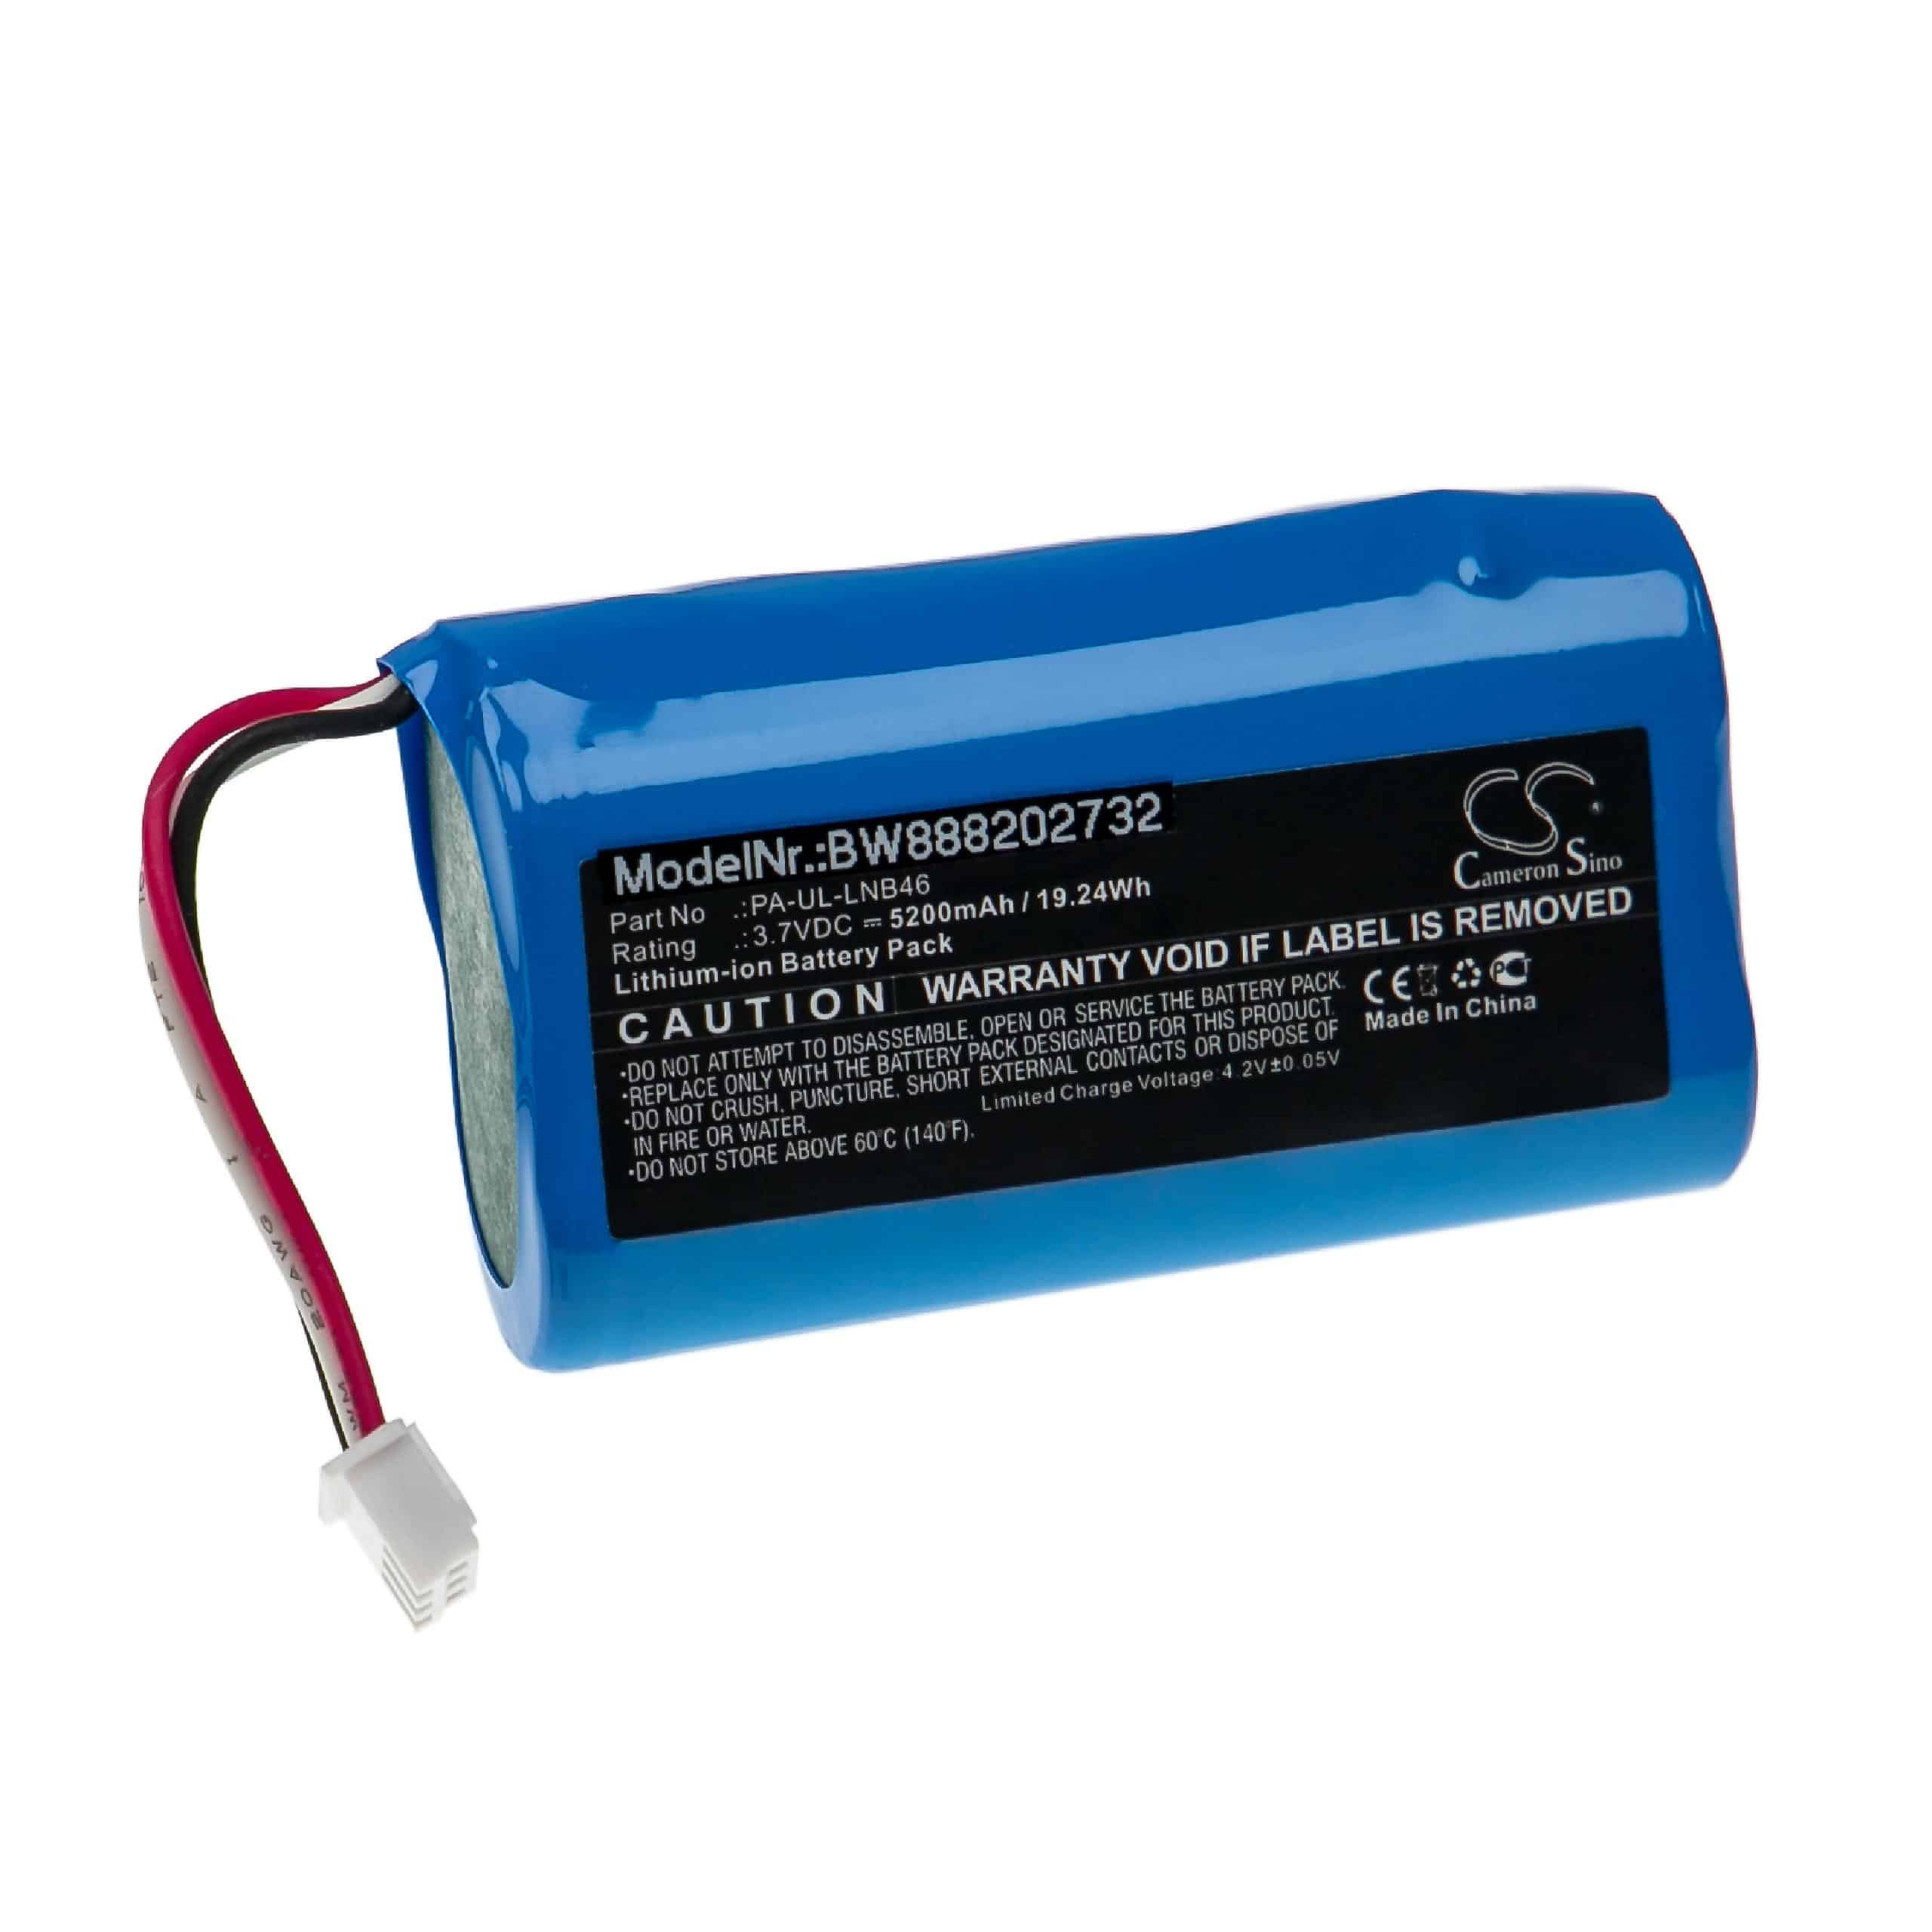 Batterie pour Fey Elektronik PA-UL-LNB46 - 5200mAh 3,7V Li-ion, 2x cellules